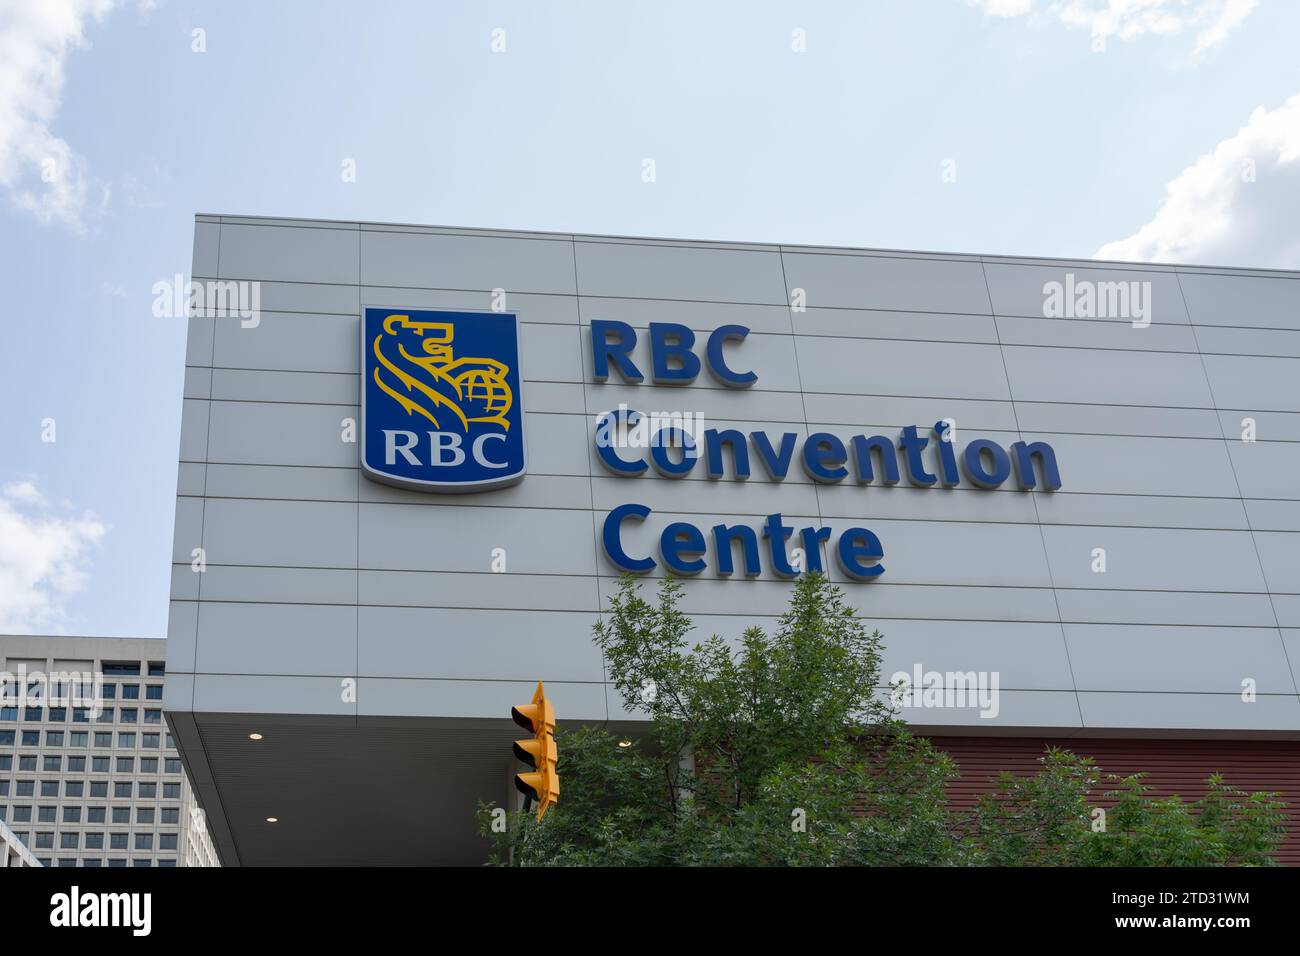 L'insegna sull'edificio del centro convegni RBC a Winnipeg, Manitoba, Canada Foto Stock